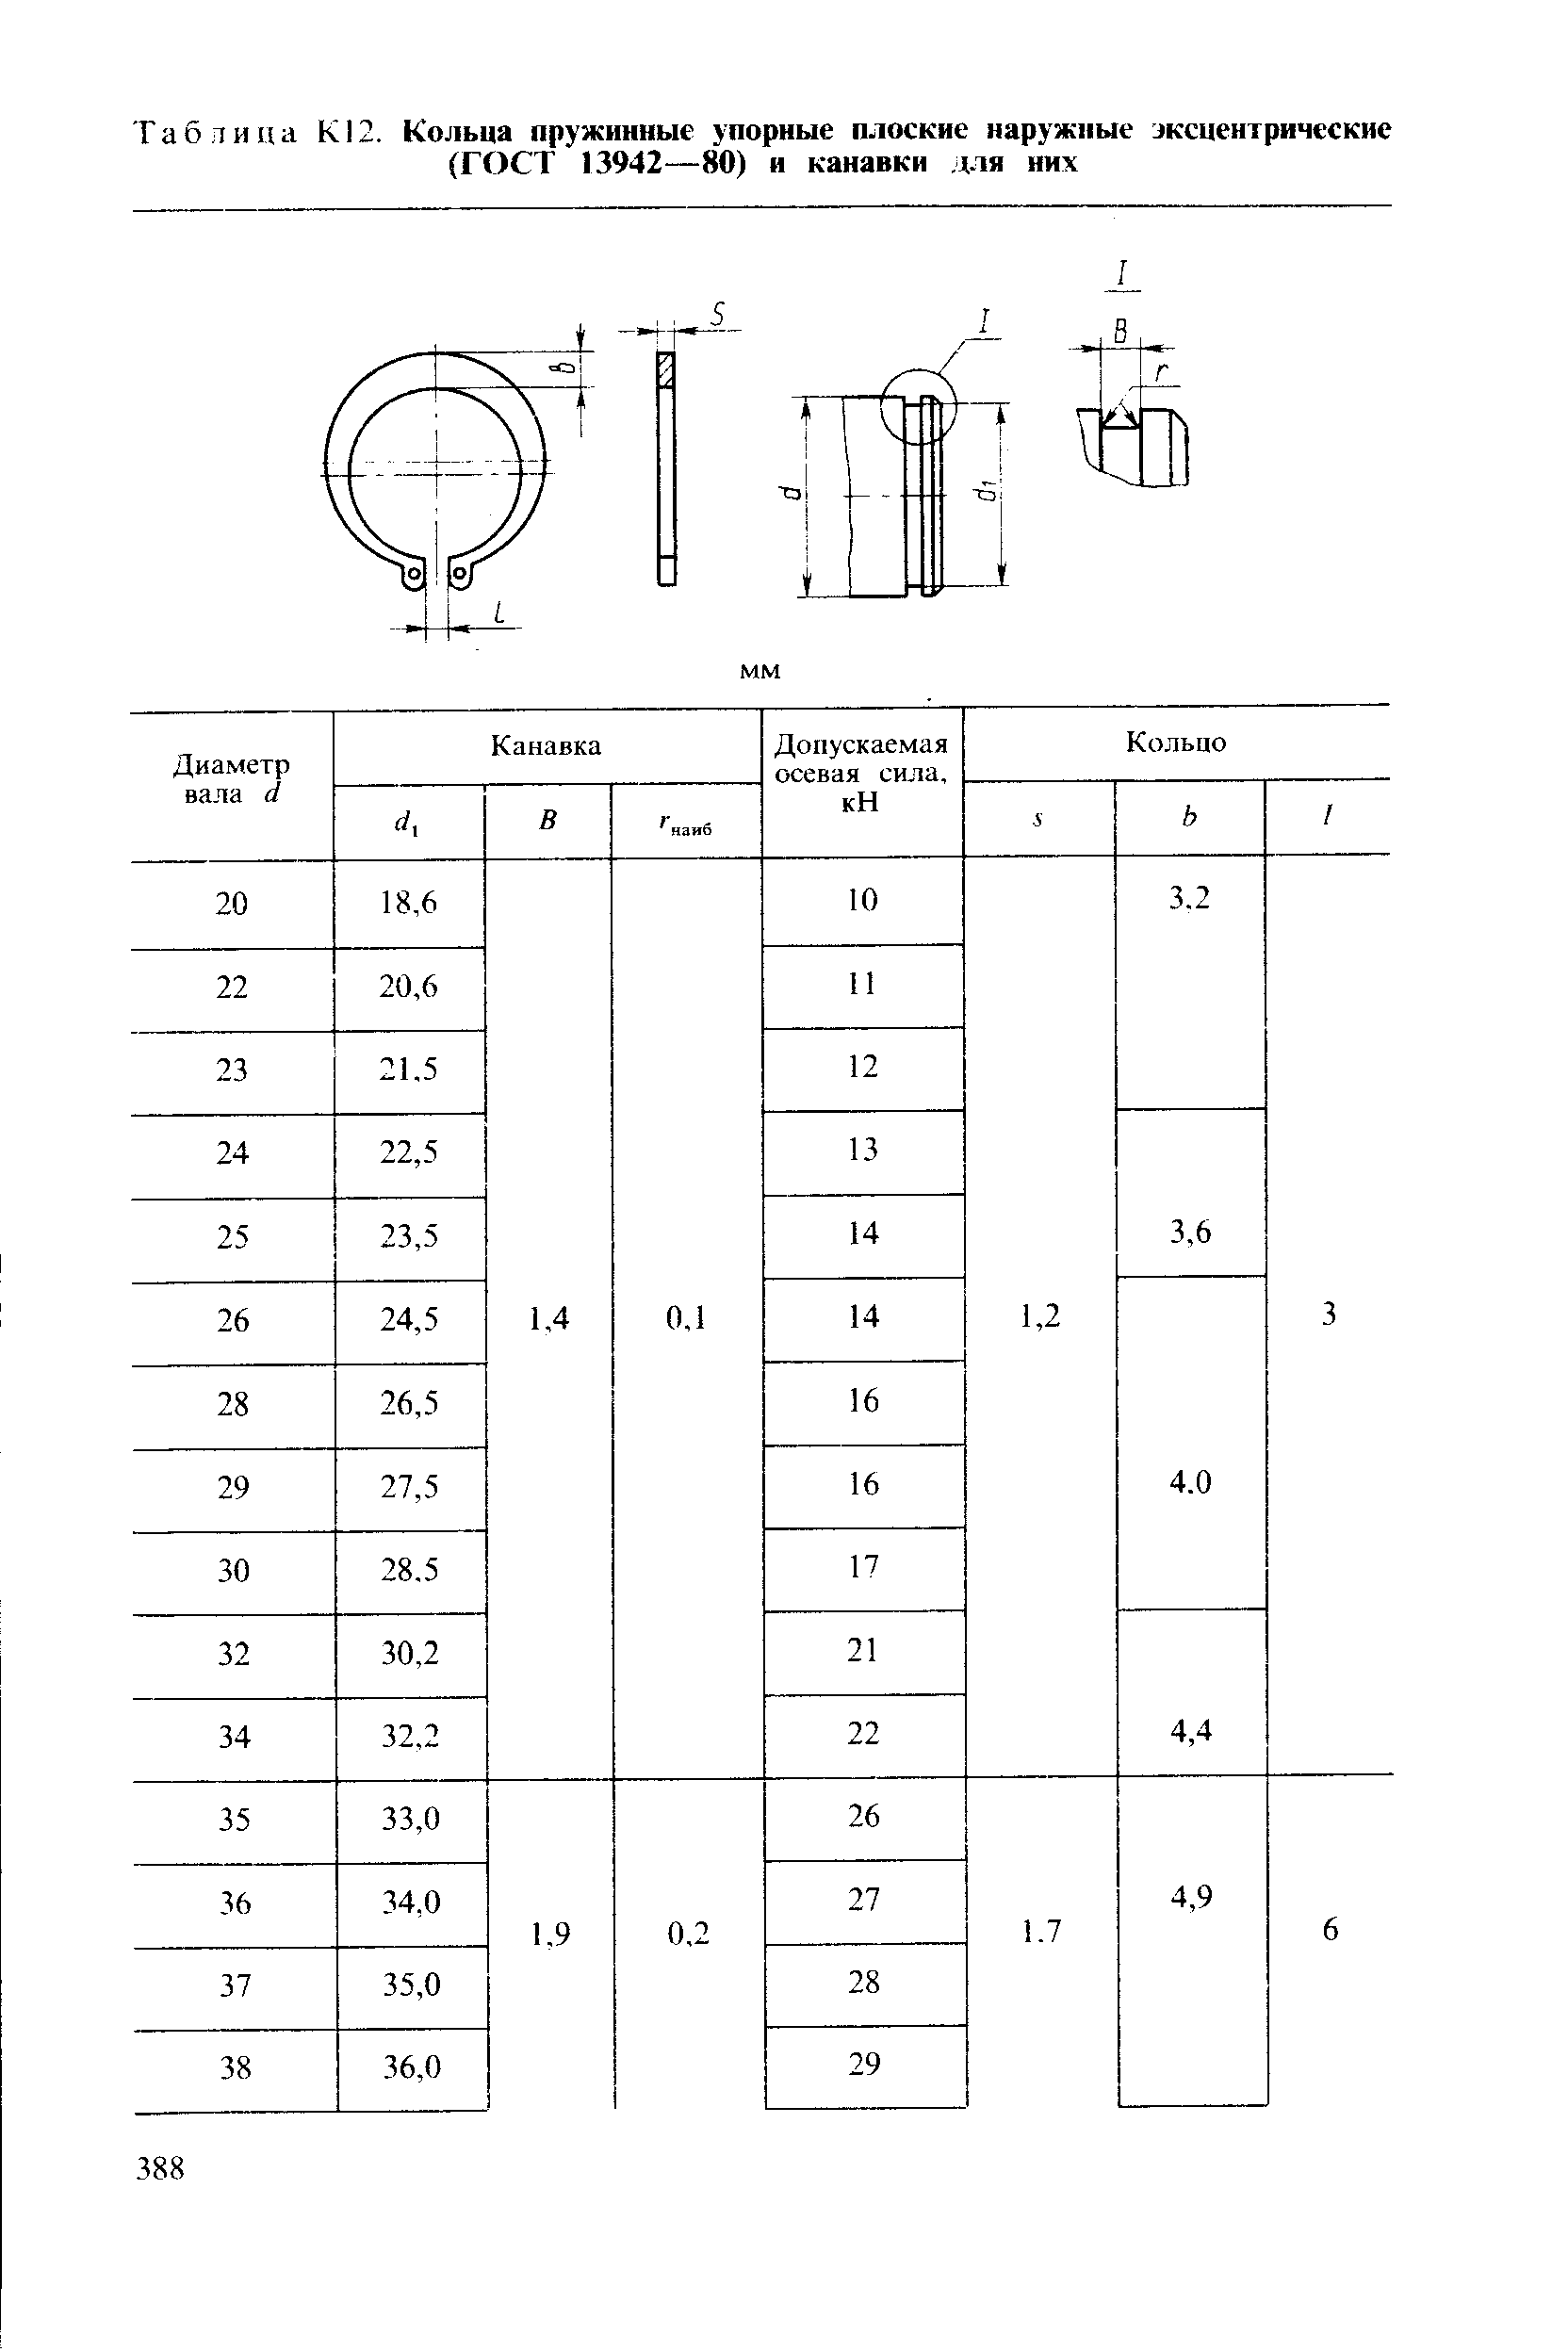 Таблица К12. Кольца пружинные упорные плоские наружные жсцентрические
